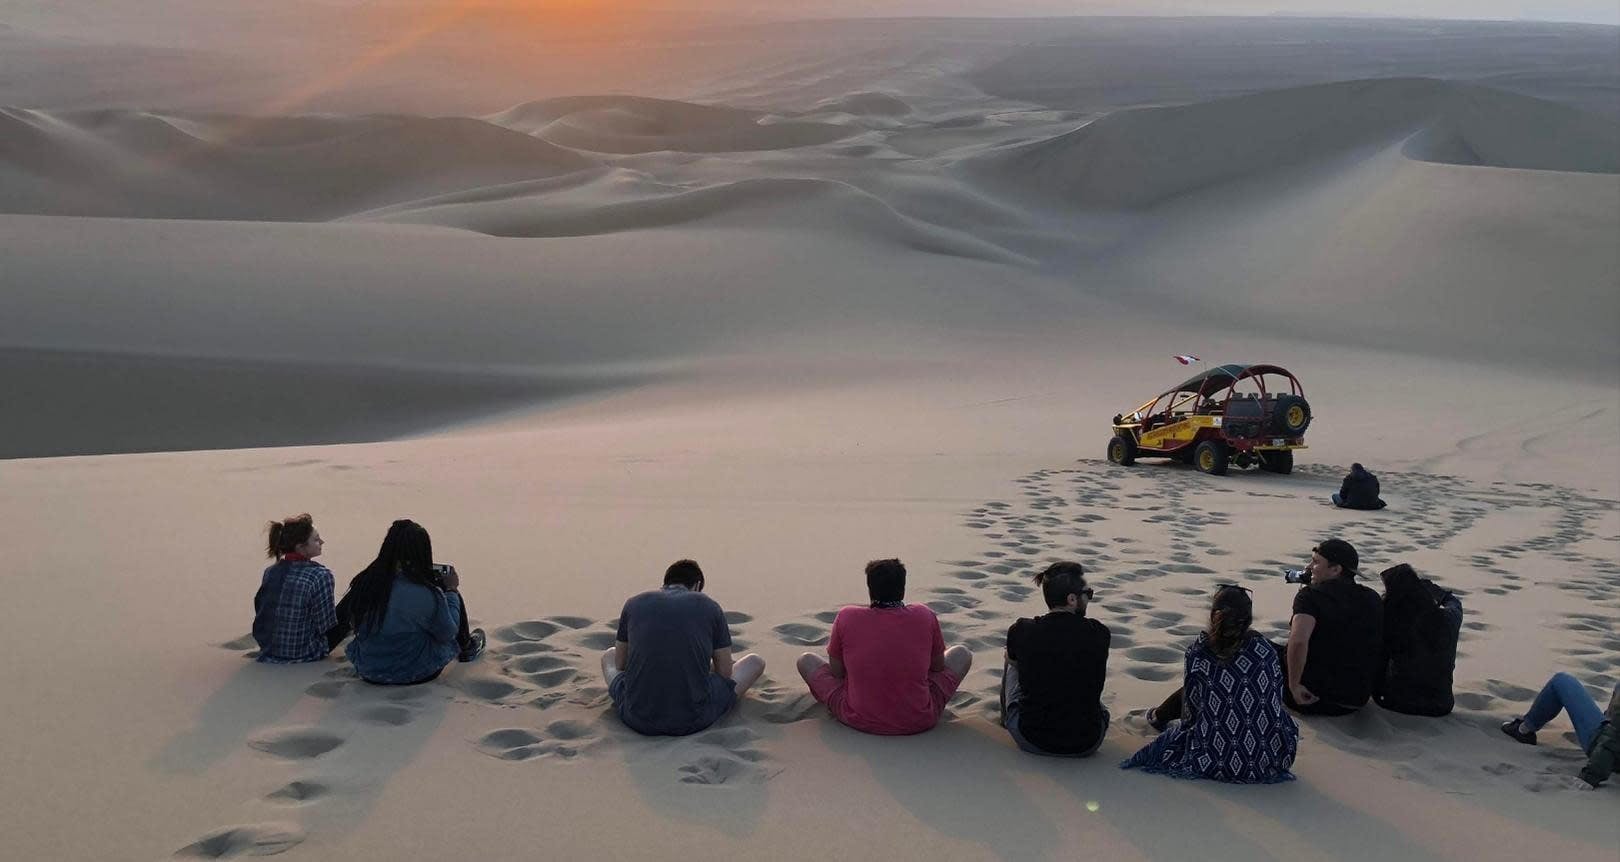 Group in desert in peru